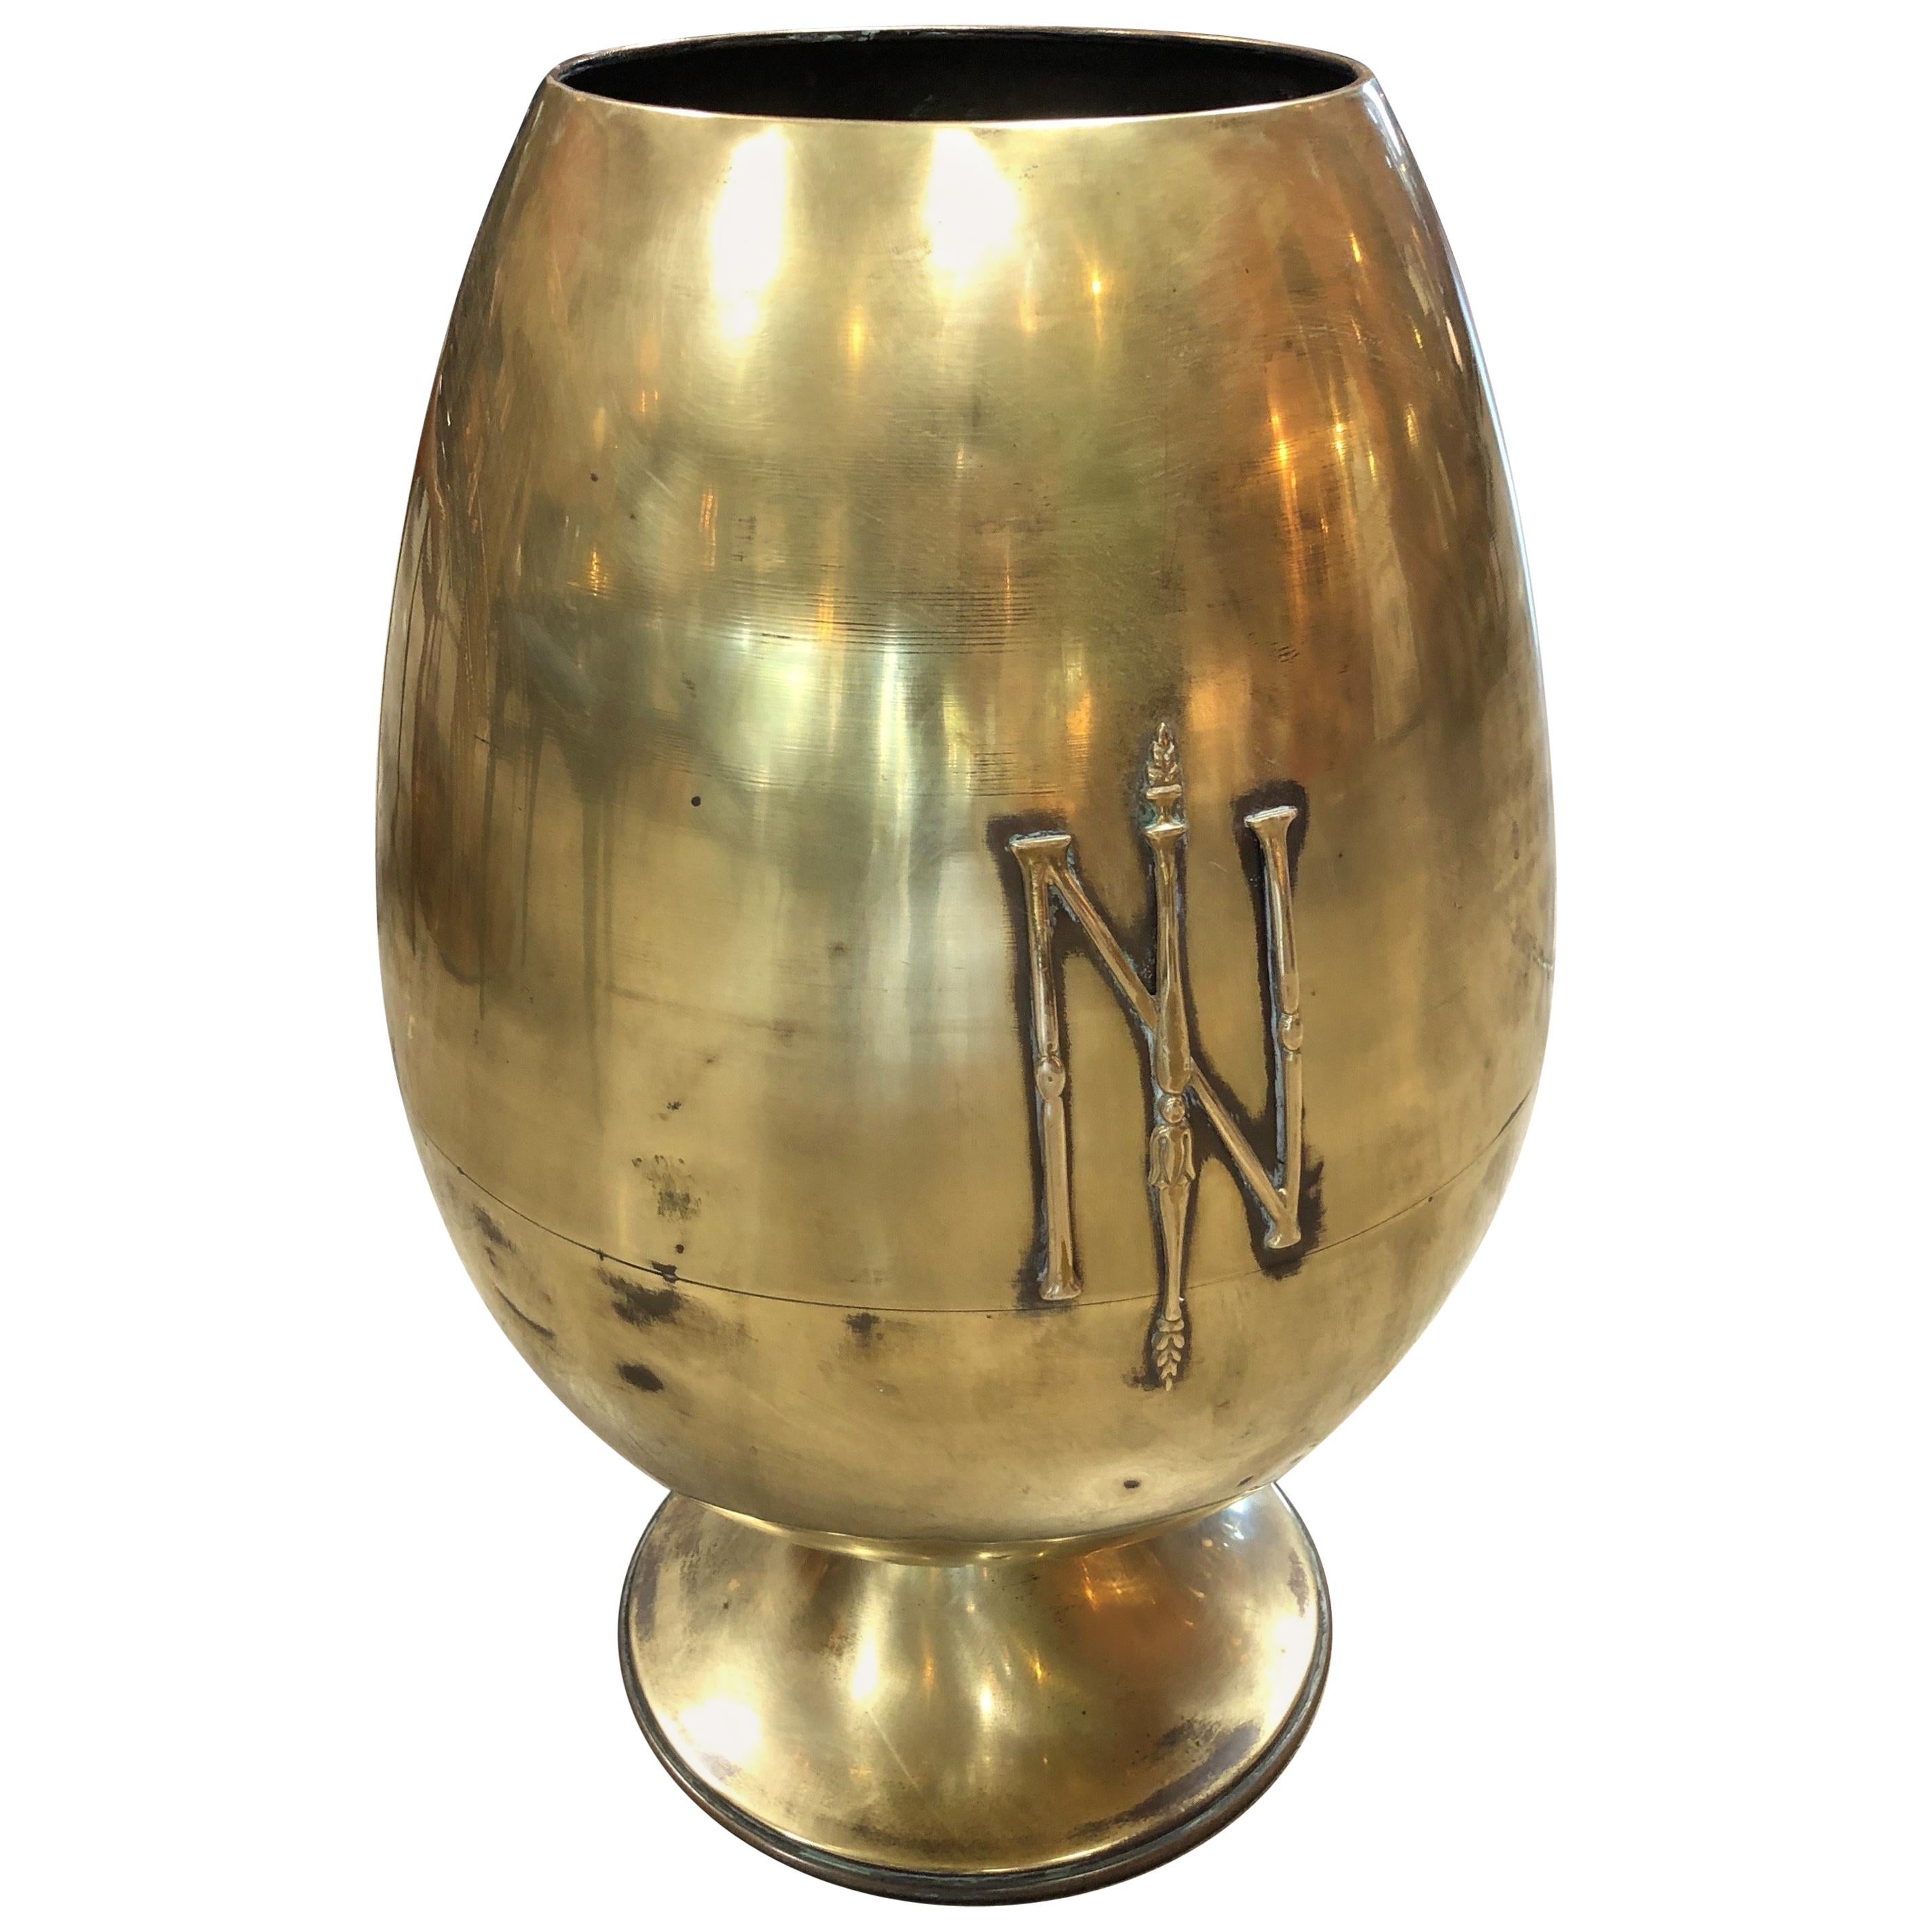 Giant Napoleonic Egg-Shaped Urn, Italy, 19th Century